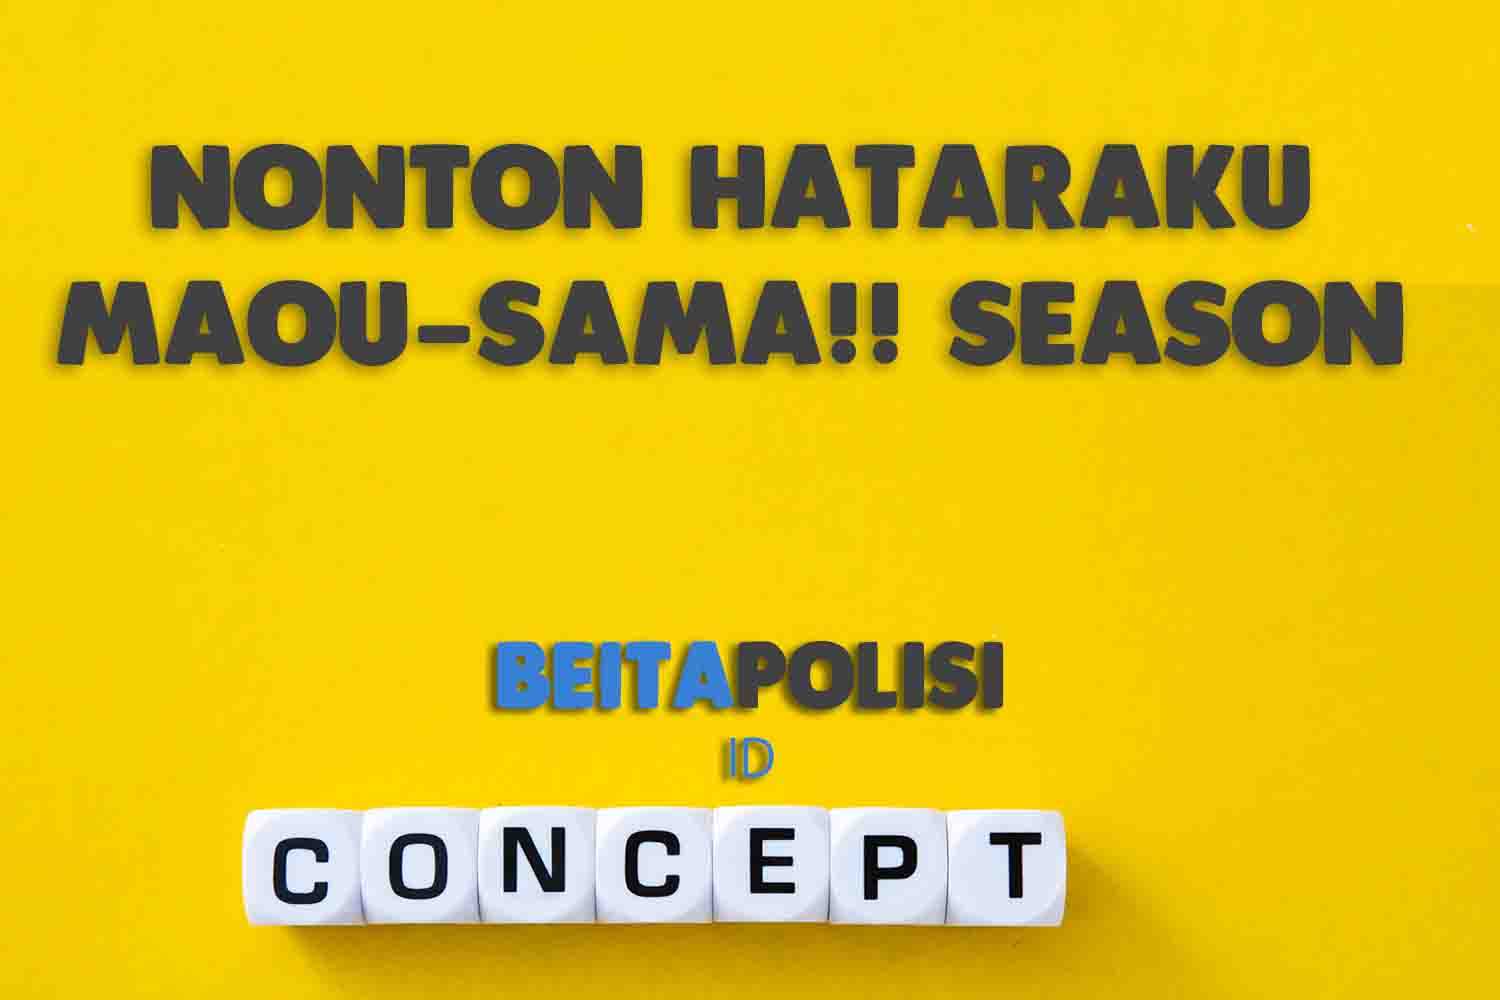 Nonton Hataraku Maou Sama Season 2 Episode 15 Sub Indo